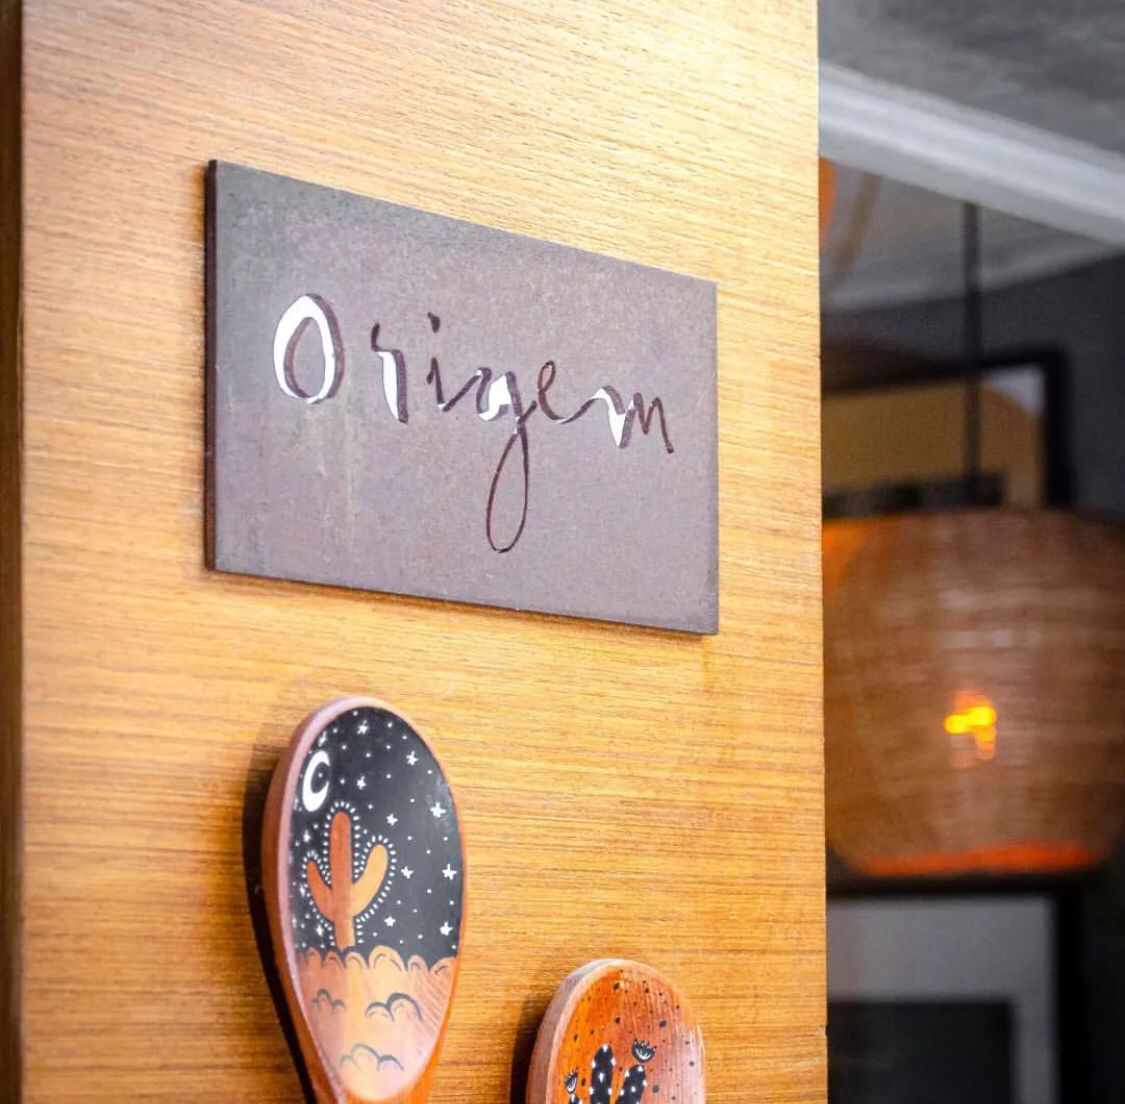 Grupo Origem expande atividade em Salvador com abertura de restaurante italiano e laboratório criativo